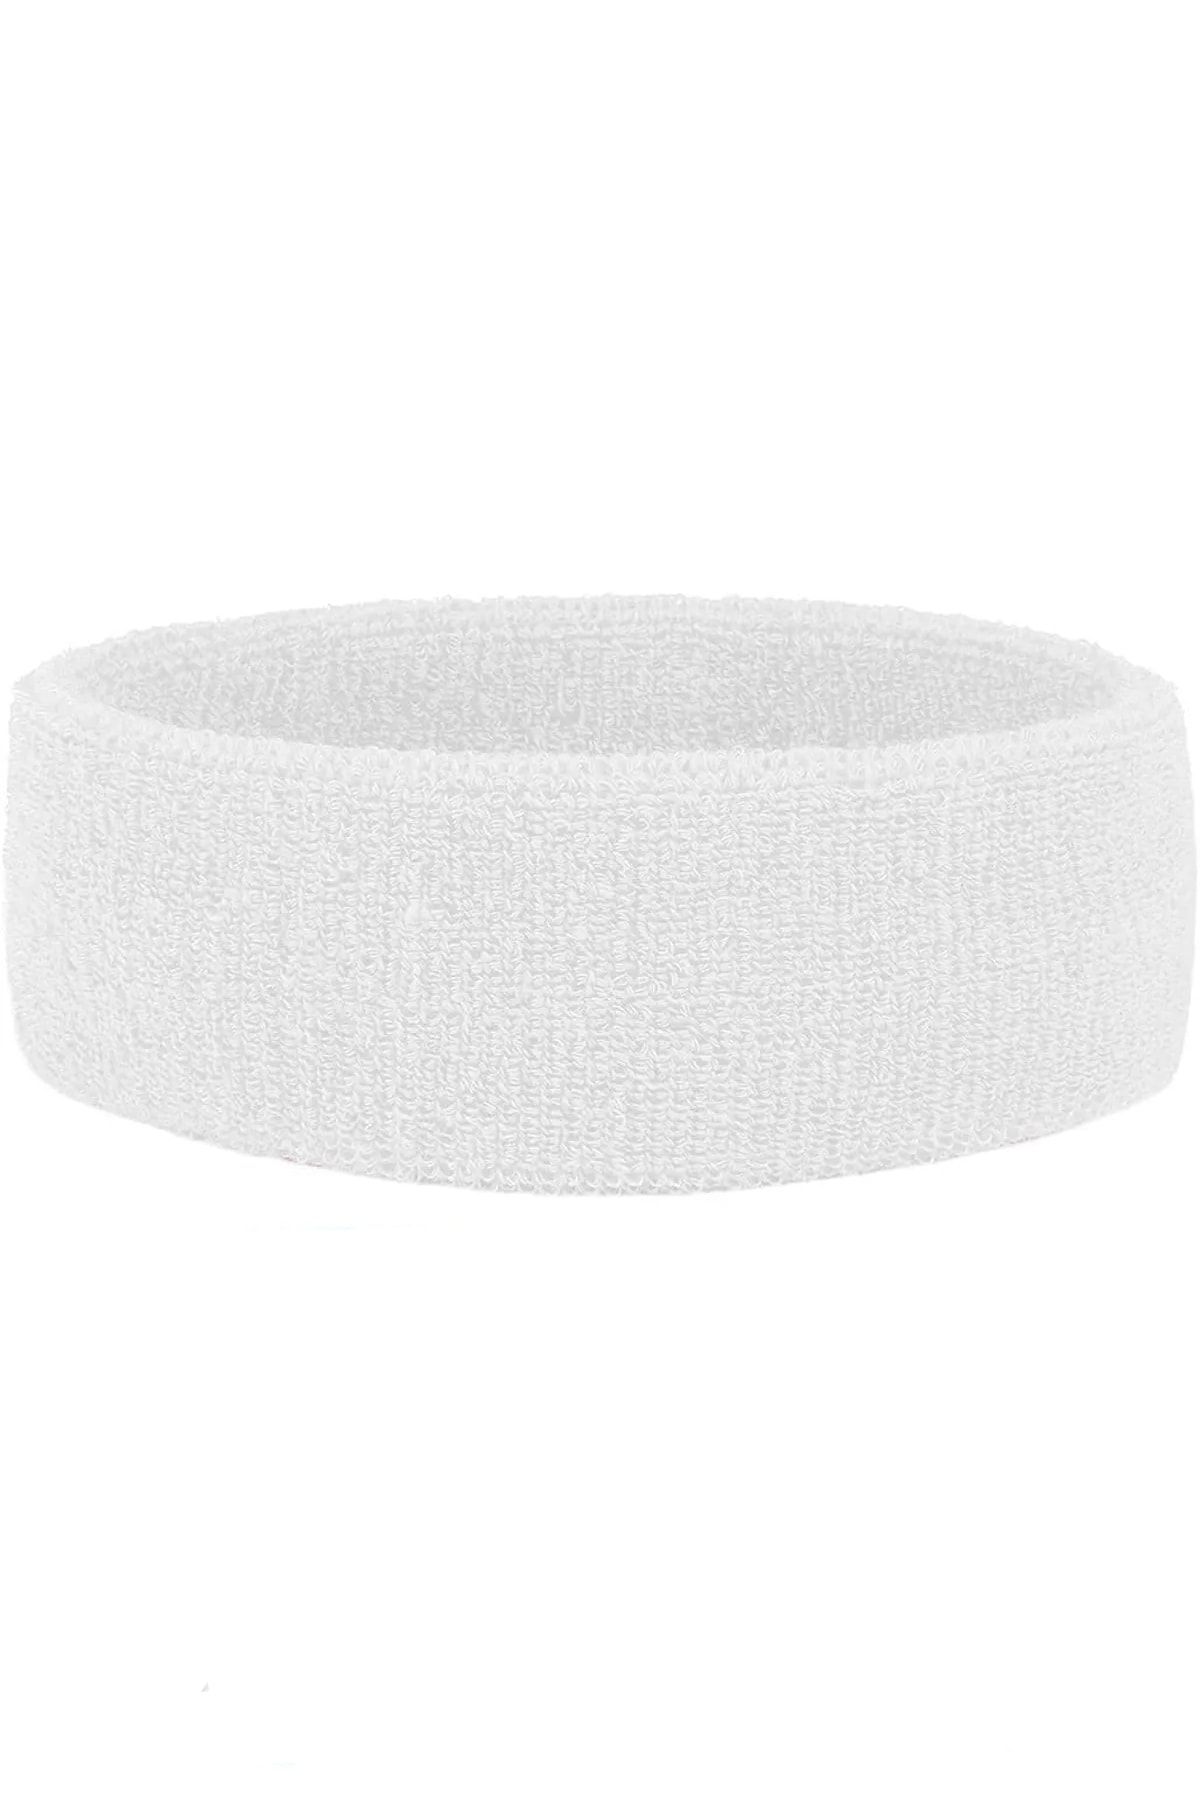 Sporsize Sports Headband Sweatband - Sporcu Saç Bandı Havlu Kafabandı Pamuklu Iplik Bandana Beyaz